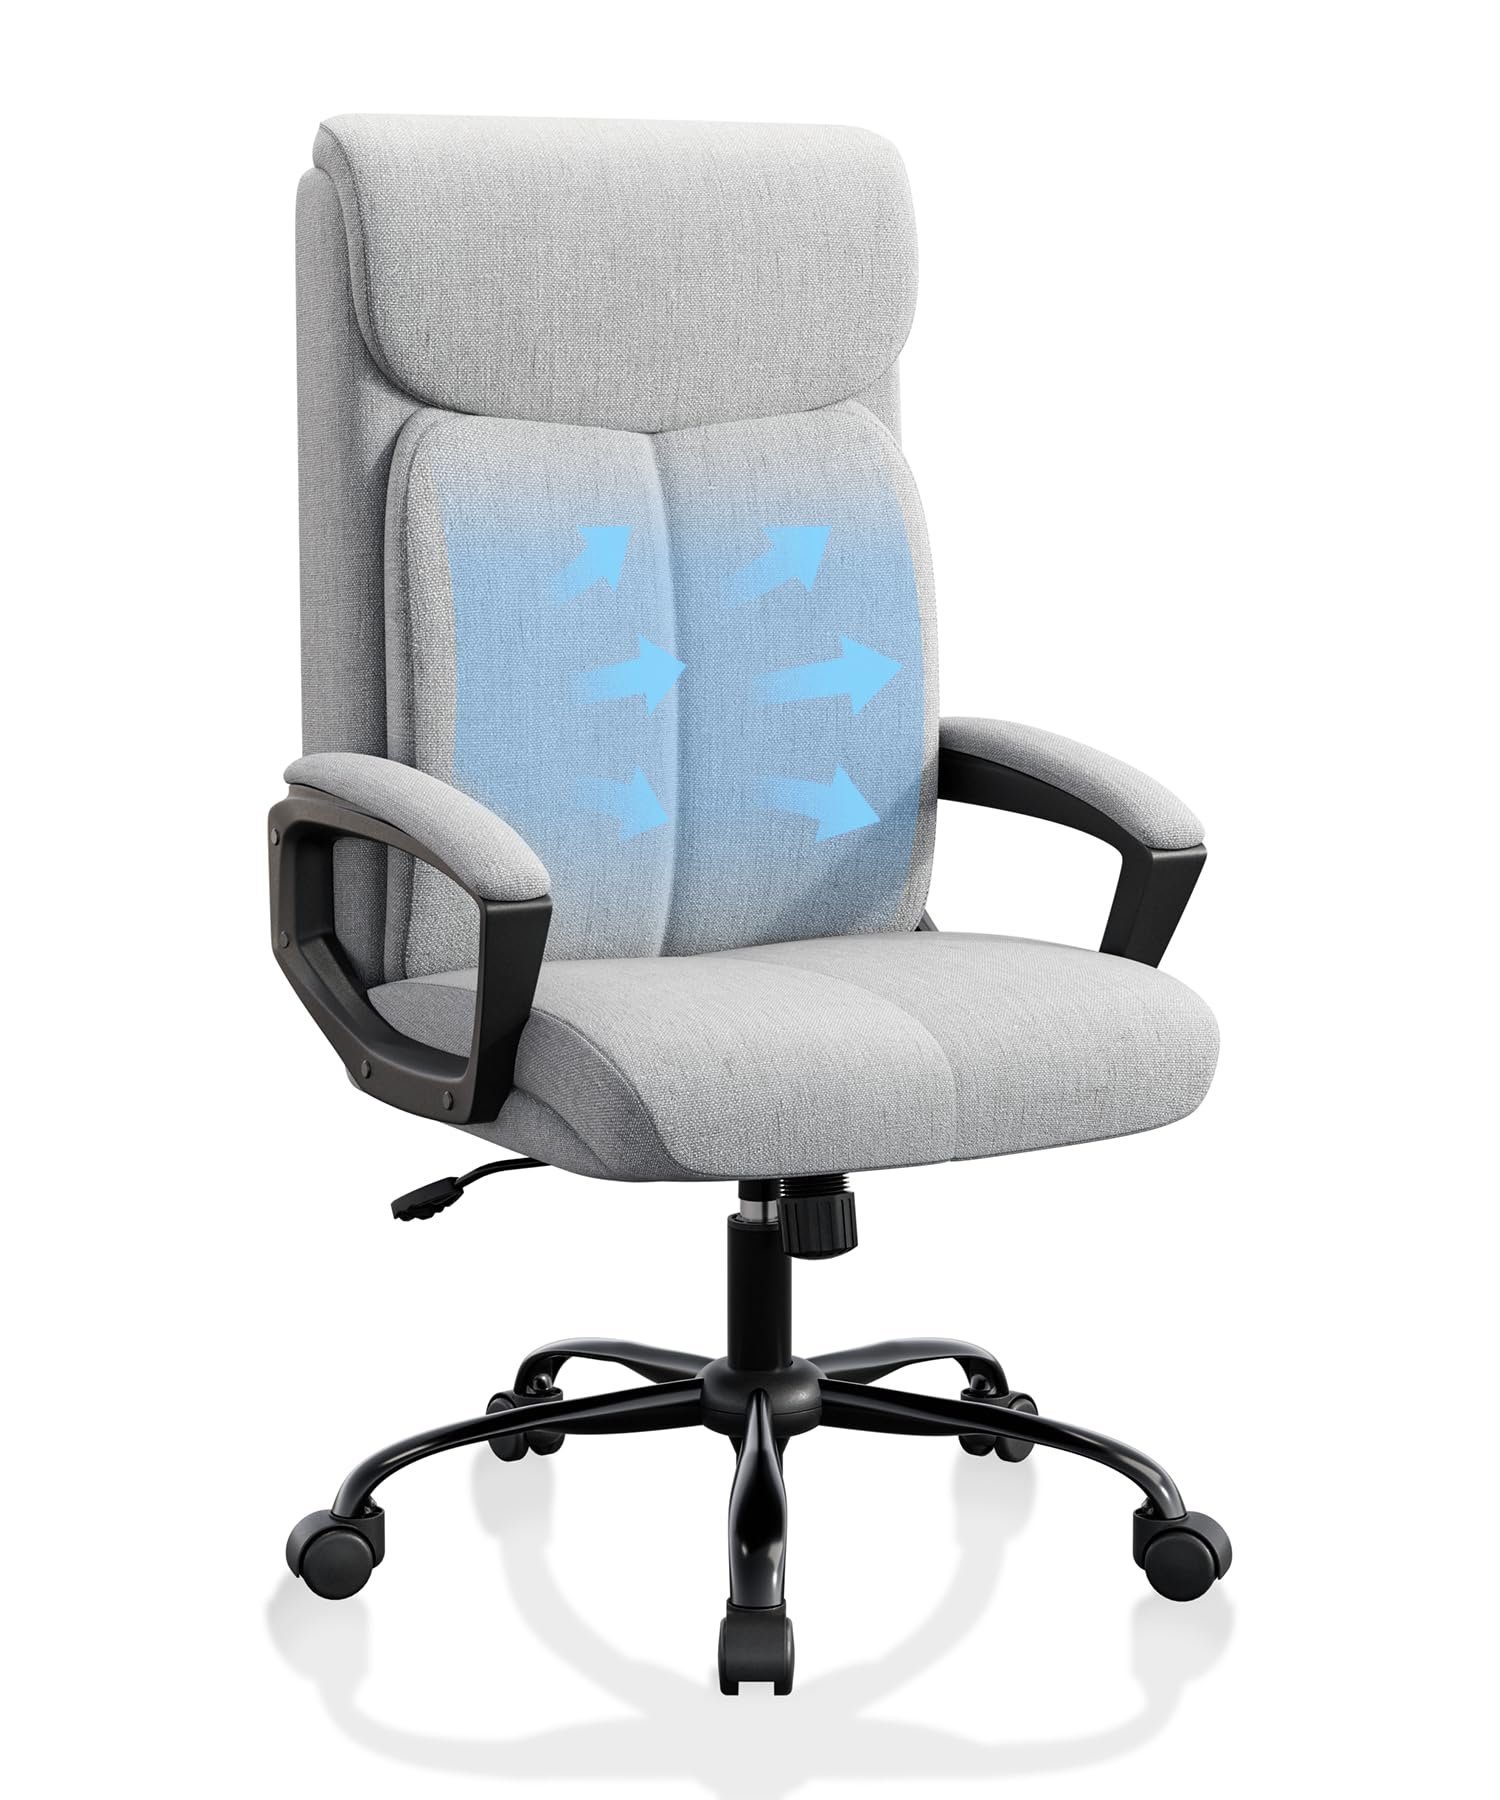 Fangqi Gaming-Stuhl Bürostuhl,360° drehbar, Rückenlehne 90°-110° neigbar, mit Kopfstütze, Mit gepolsterten Armlehnen, leise Rollen,Hochdichtes Netzgewebe Grau